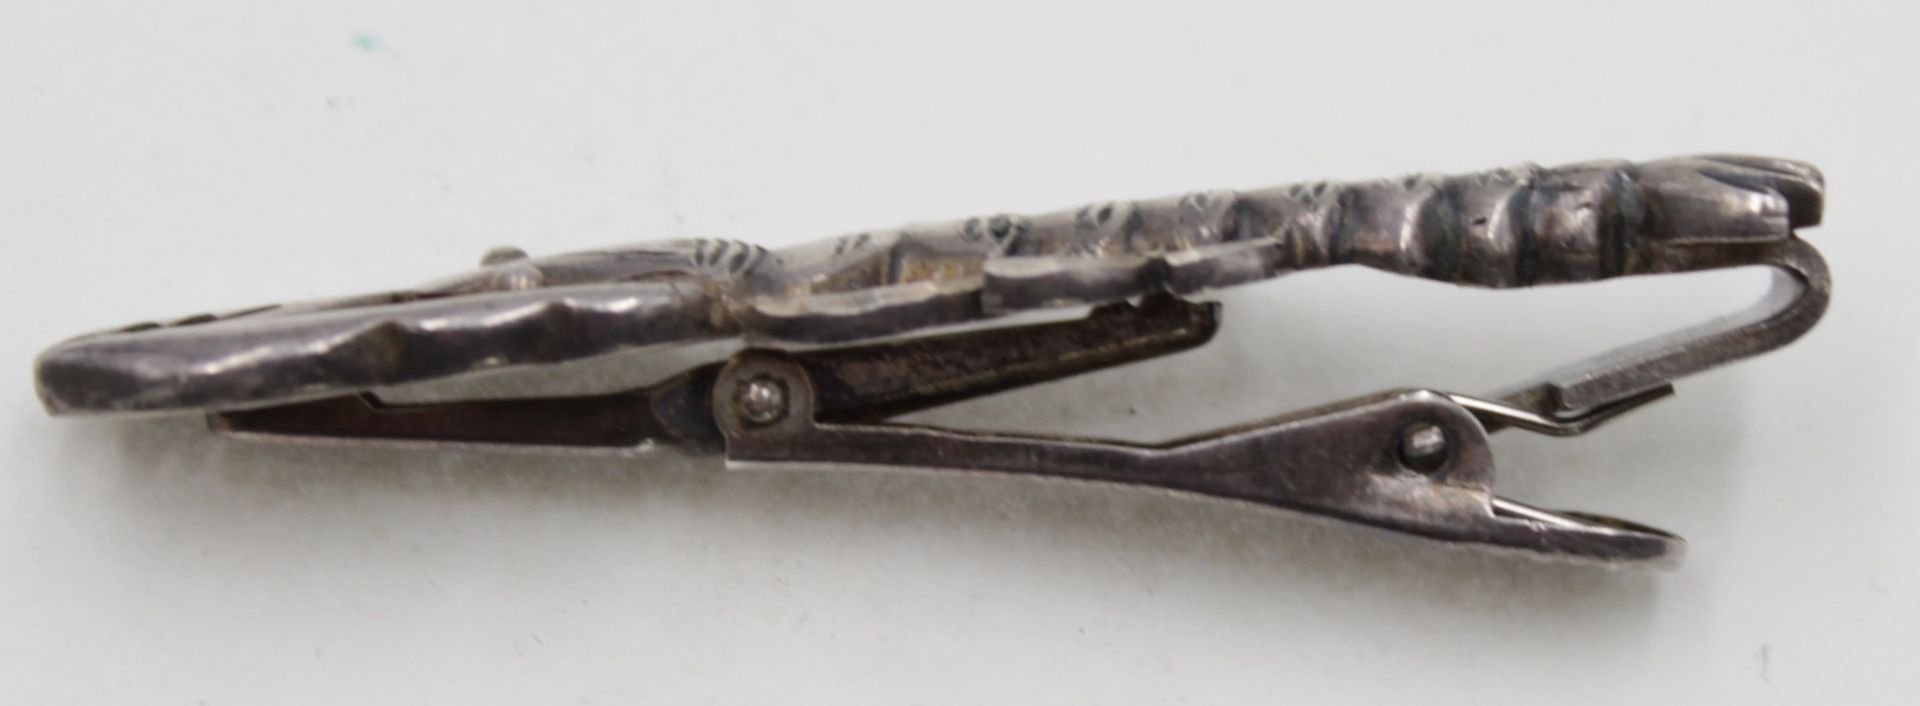 Kravattenklammer o.ä., Hummerform, 925er Silber, 12,9gr. , L-5,8cm. - Bild 2 aus 4